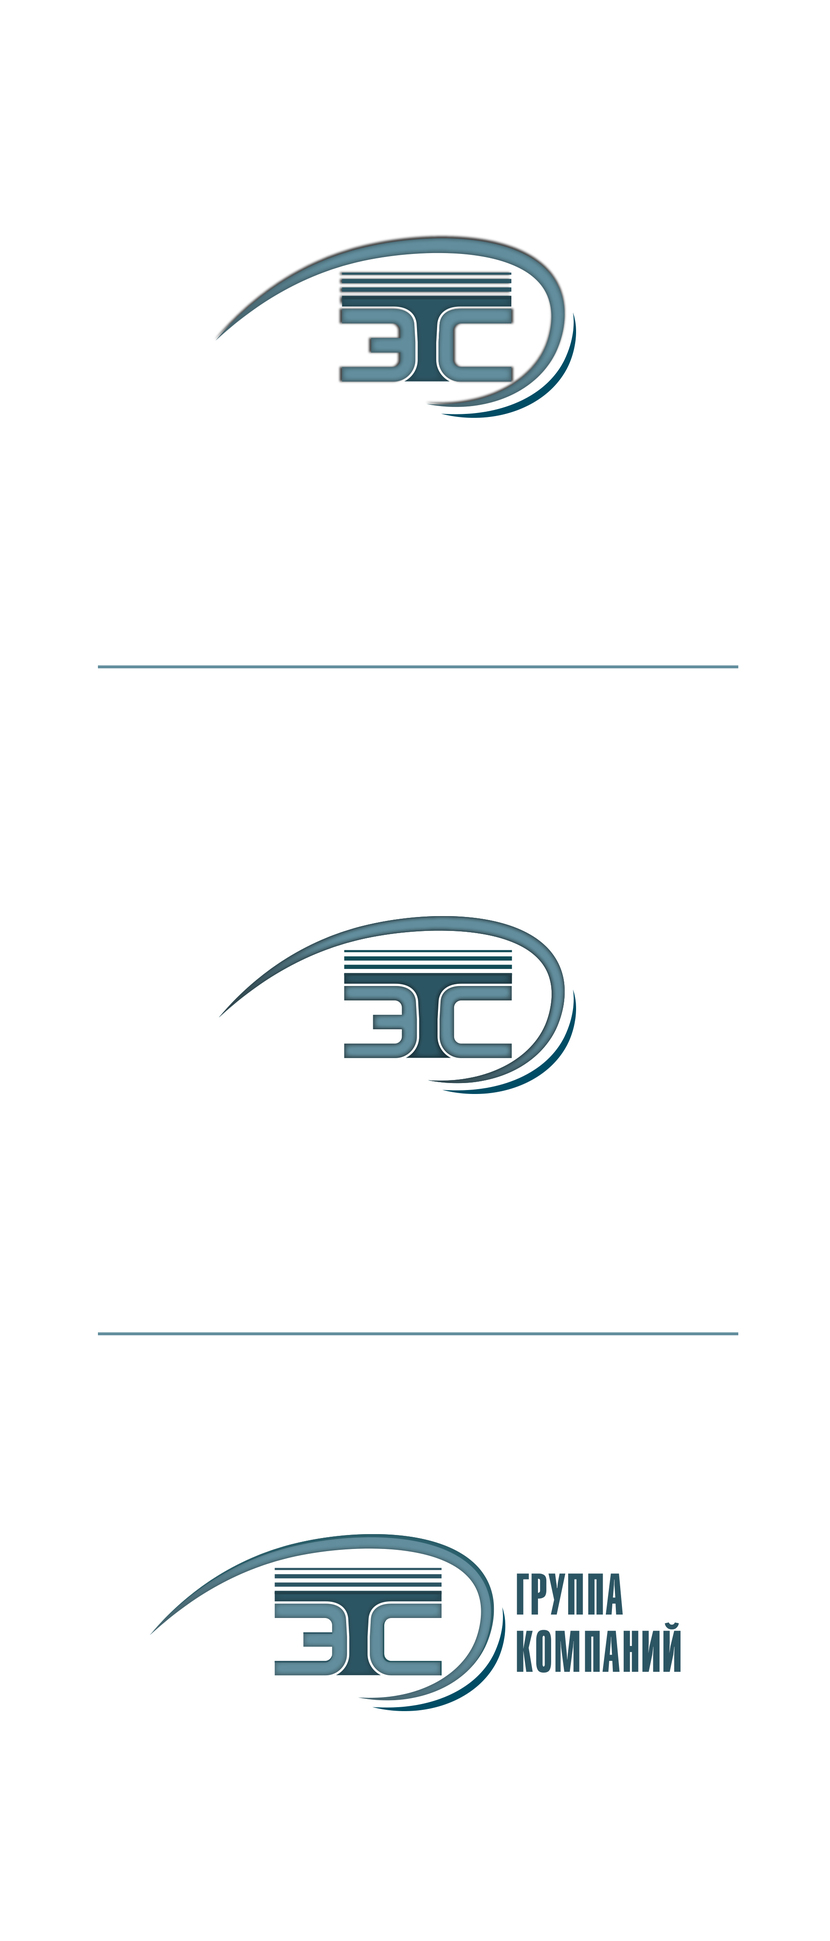 Доработка логотипа и создание на его основе фирменного стиля для группы компаний "ТЭС"  -  автор Just Ju